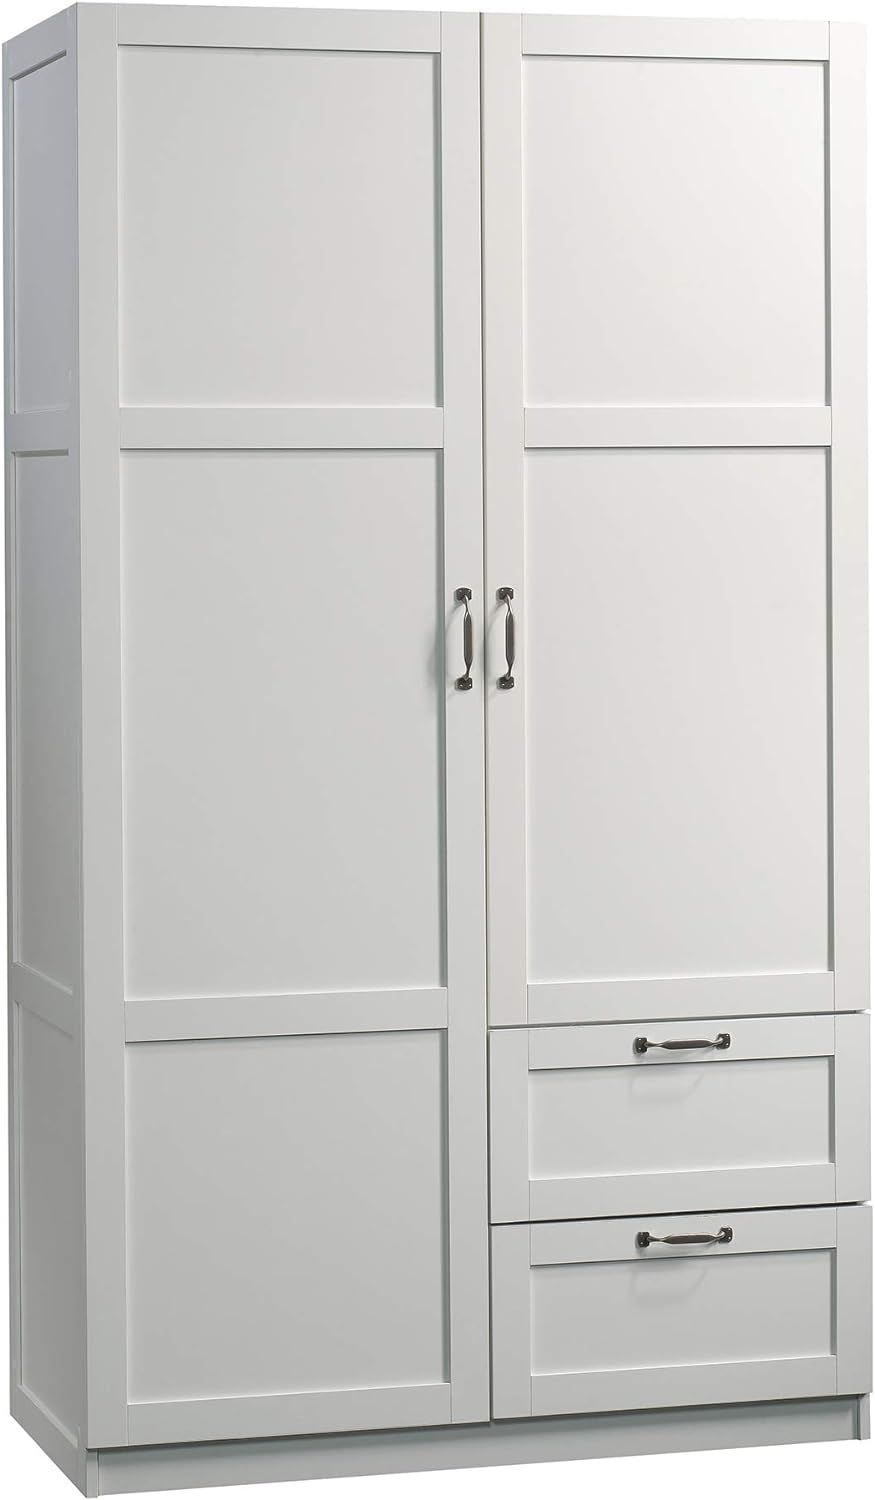 Sauder Large Storage Cabinet, Soft White Finish | Amazon (US)